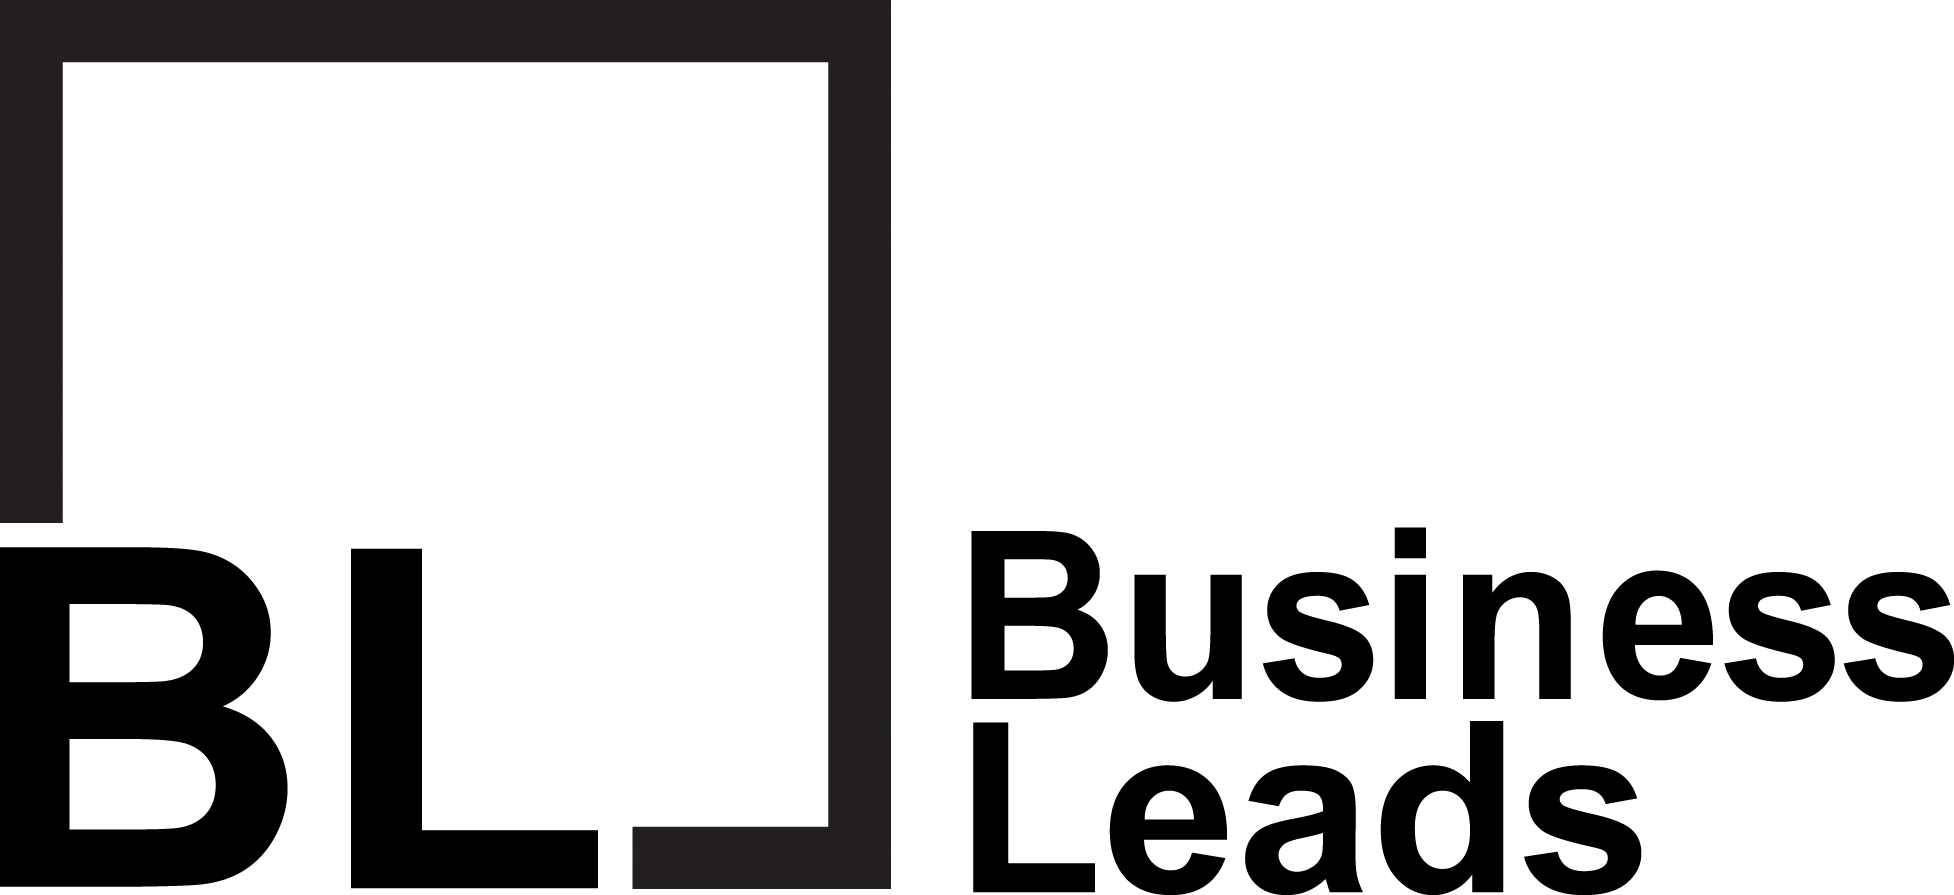 business leads logo schwarz